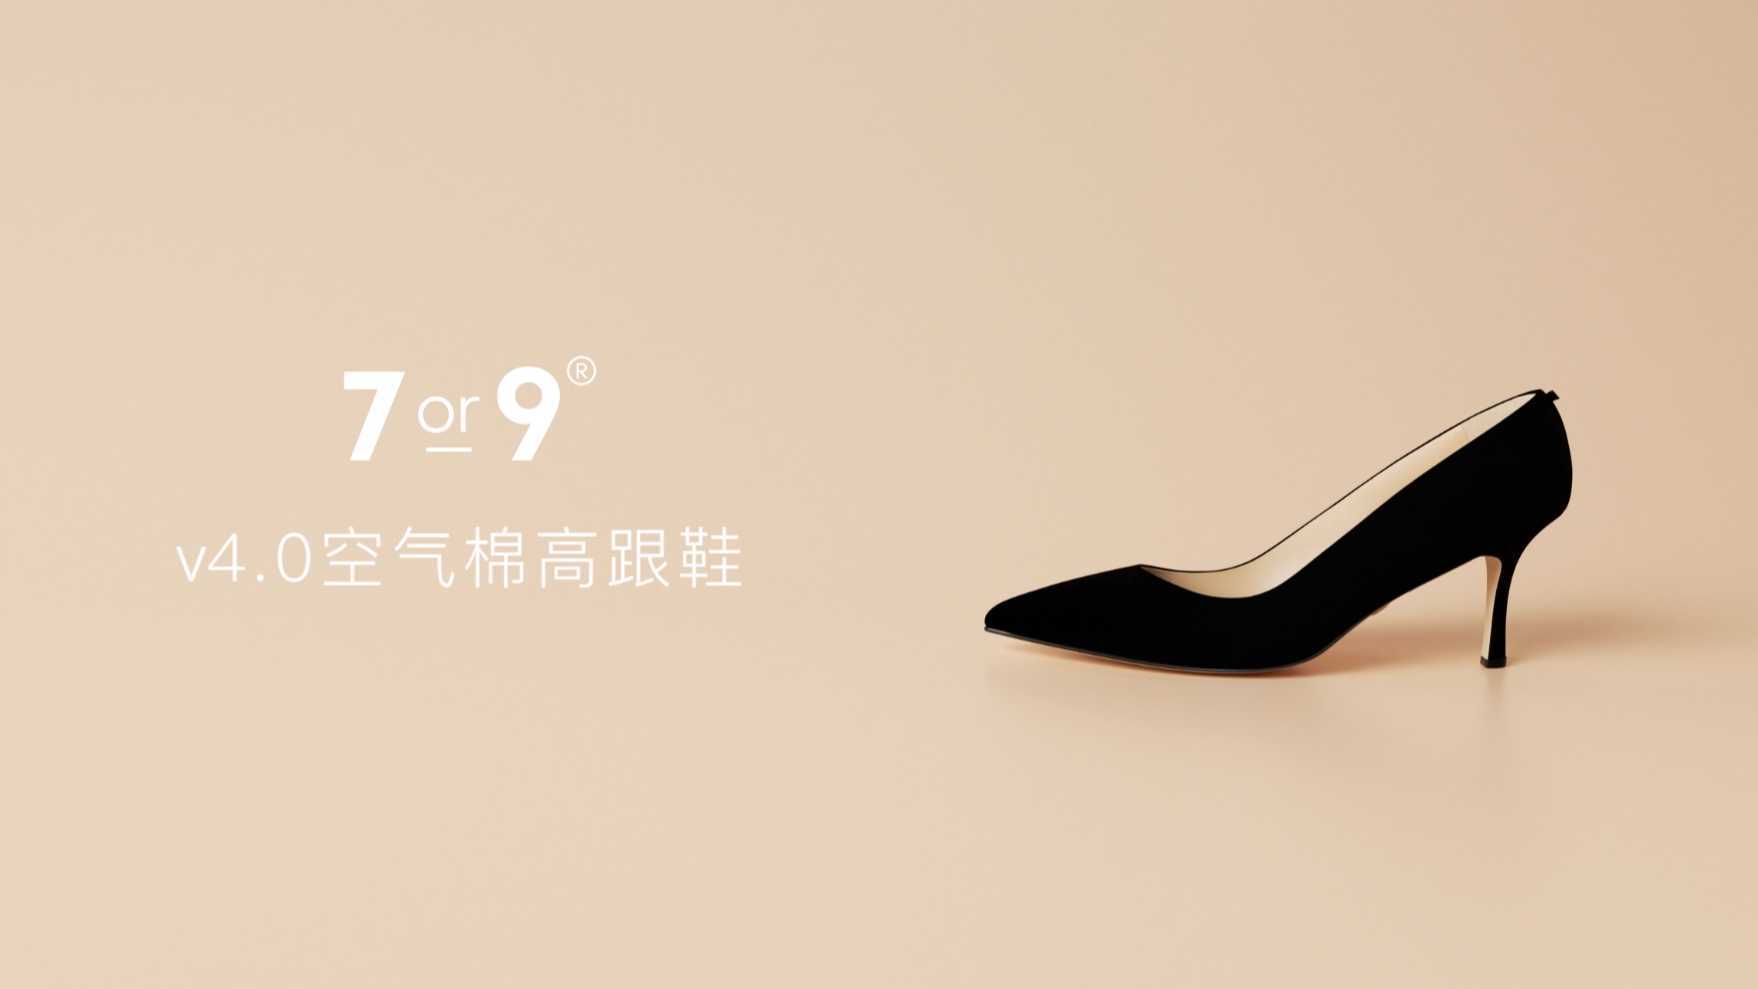 7or9 v4.0空气棉高跟鞋 卖点创意 CG动画